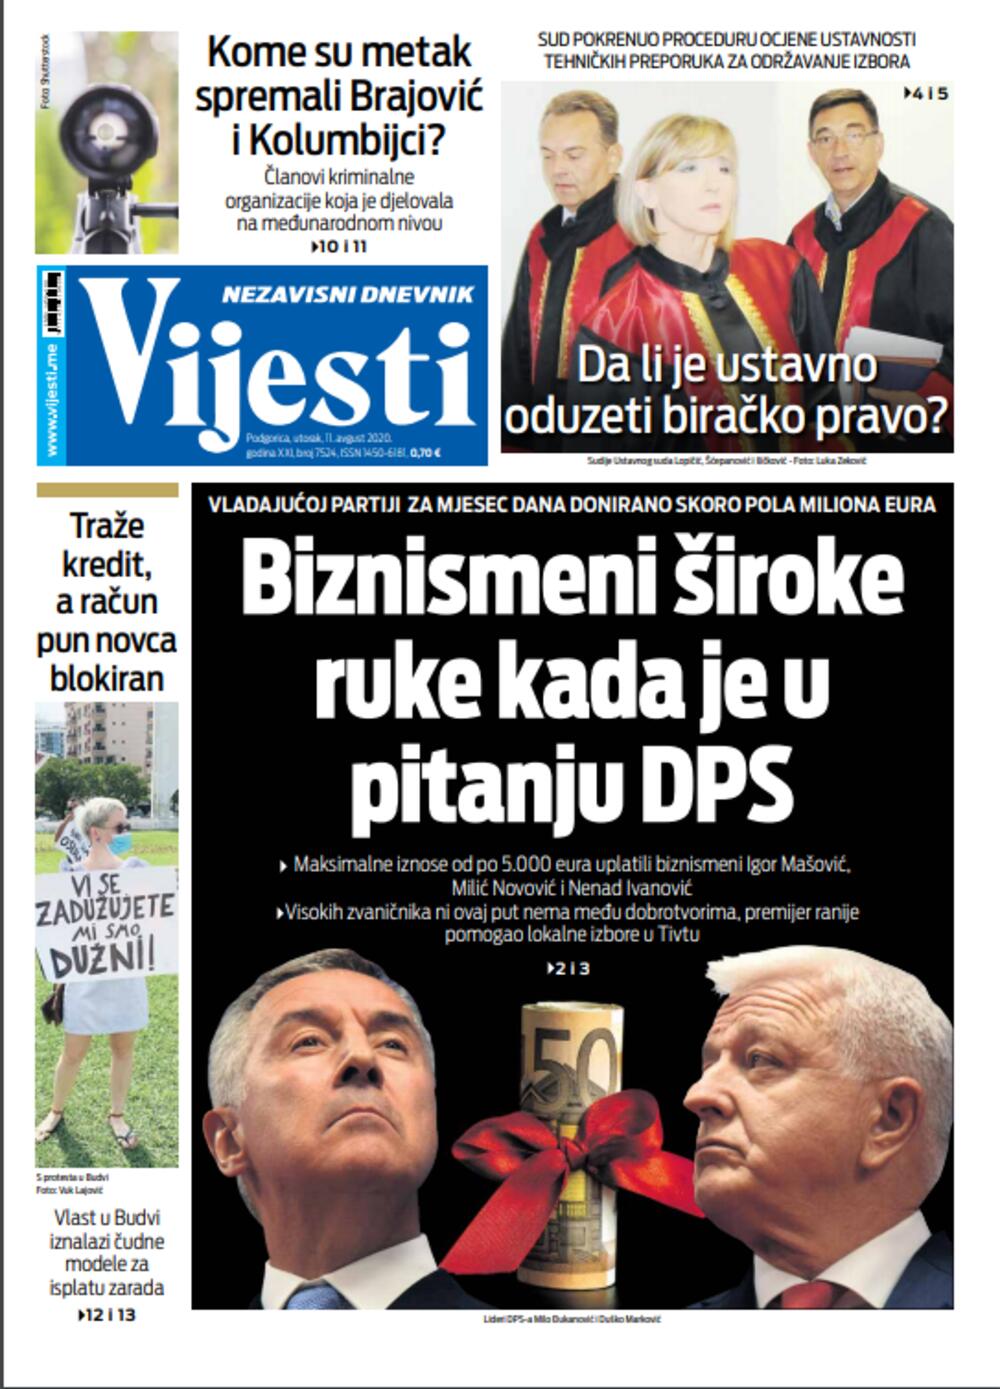 Naslovna strana "Vijesti" za 11. avgust, Foto: Vijesti